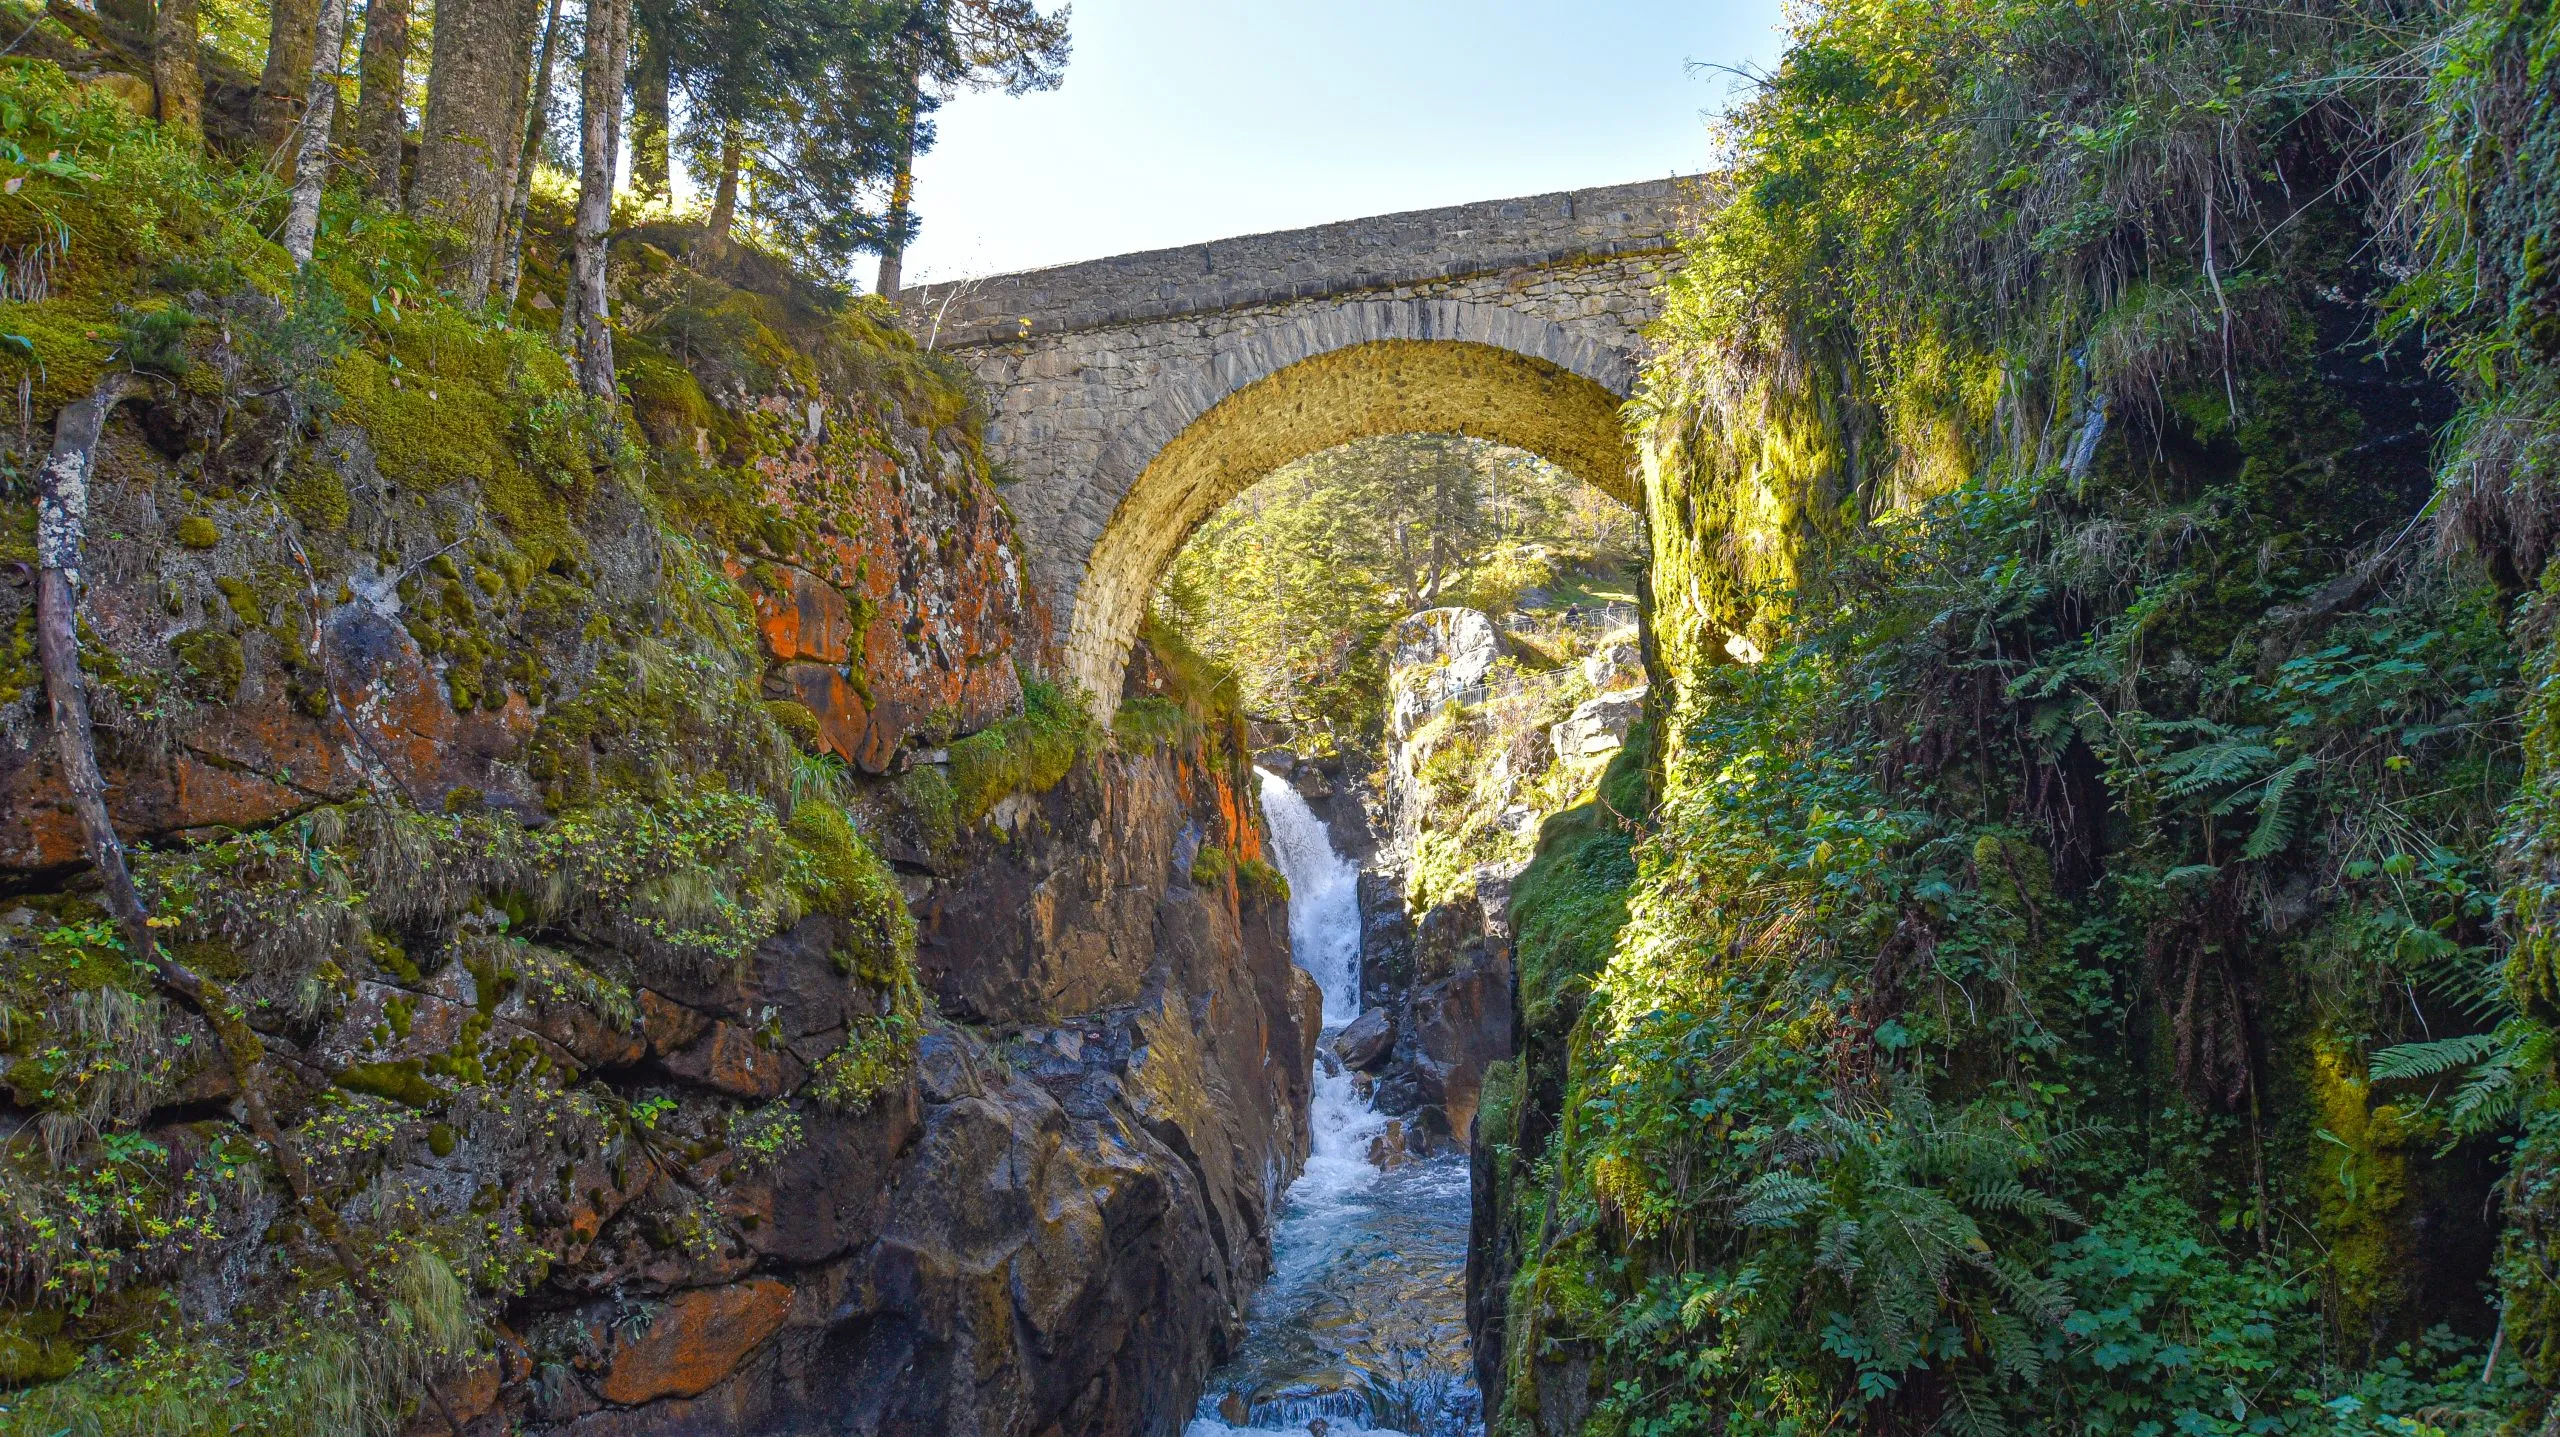 Cauterets, Francia - 10 oct, 2021: El puente de España sobre el Gave de Marcadau en el Parque Nacional de los Pirineos